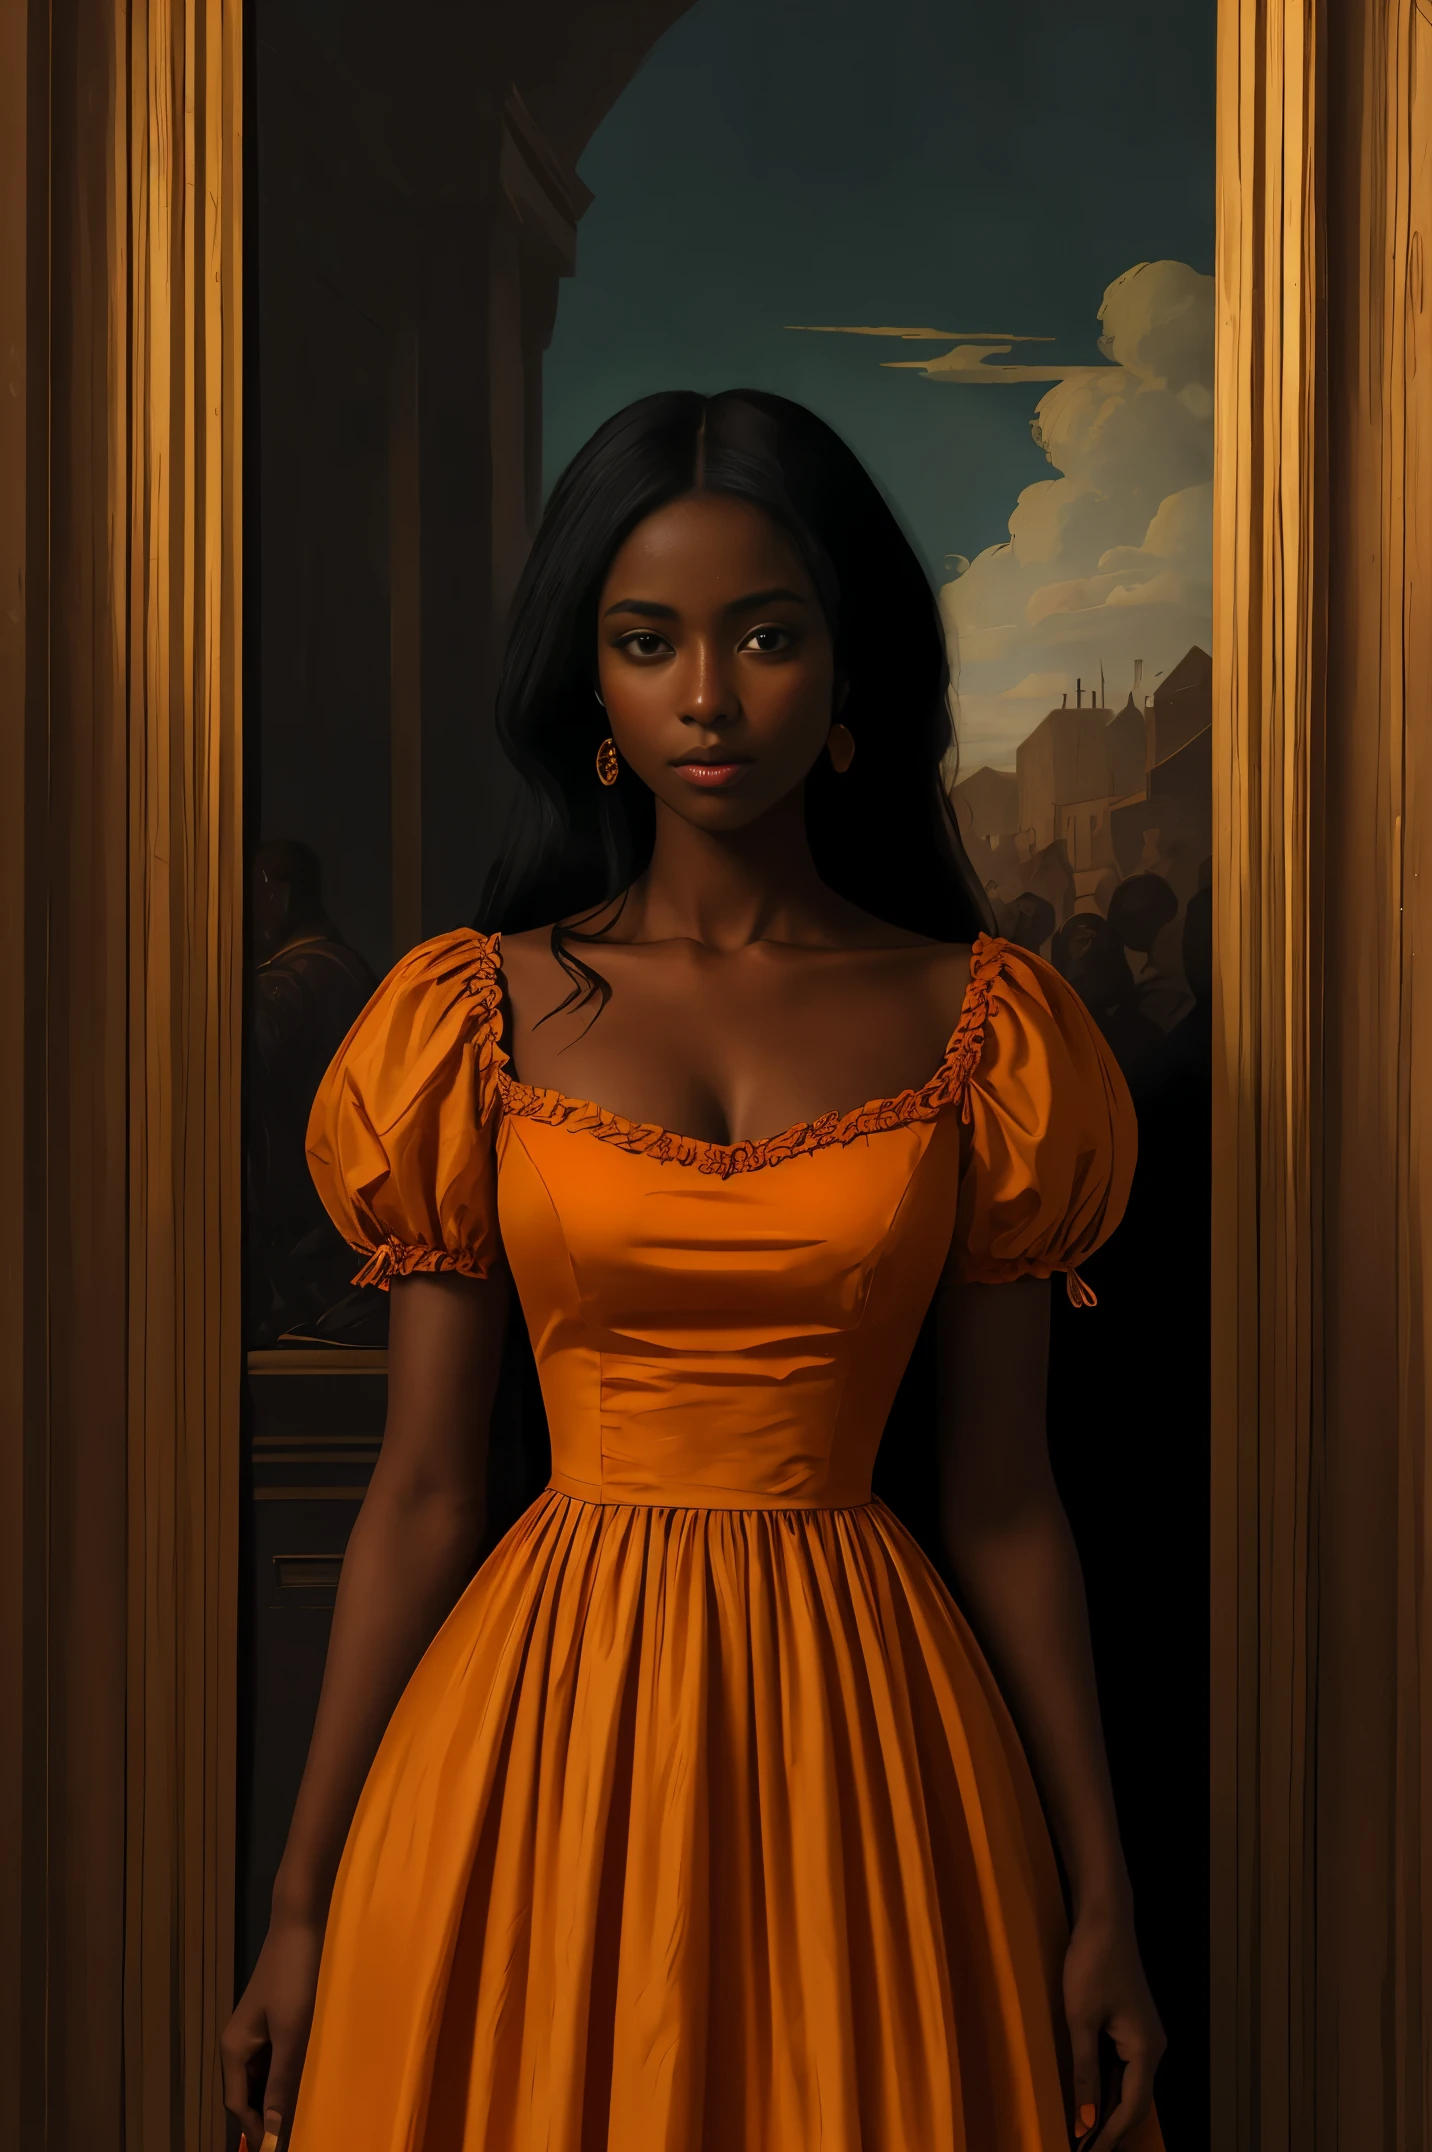 身穿橙色连衣裙的黝黑皮肤的漂亮女人, 文艺复兴风格, 灵感来自瓦西里·韦列夏金